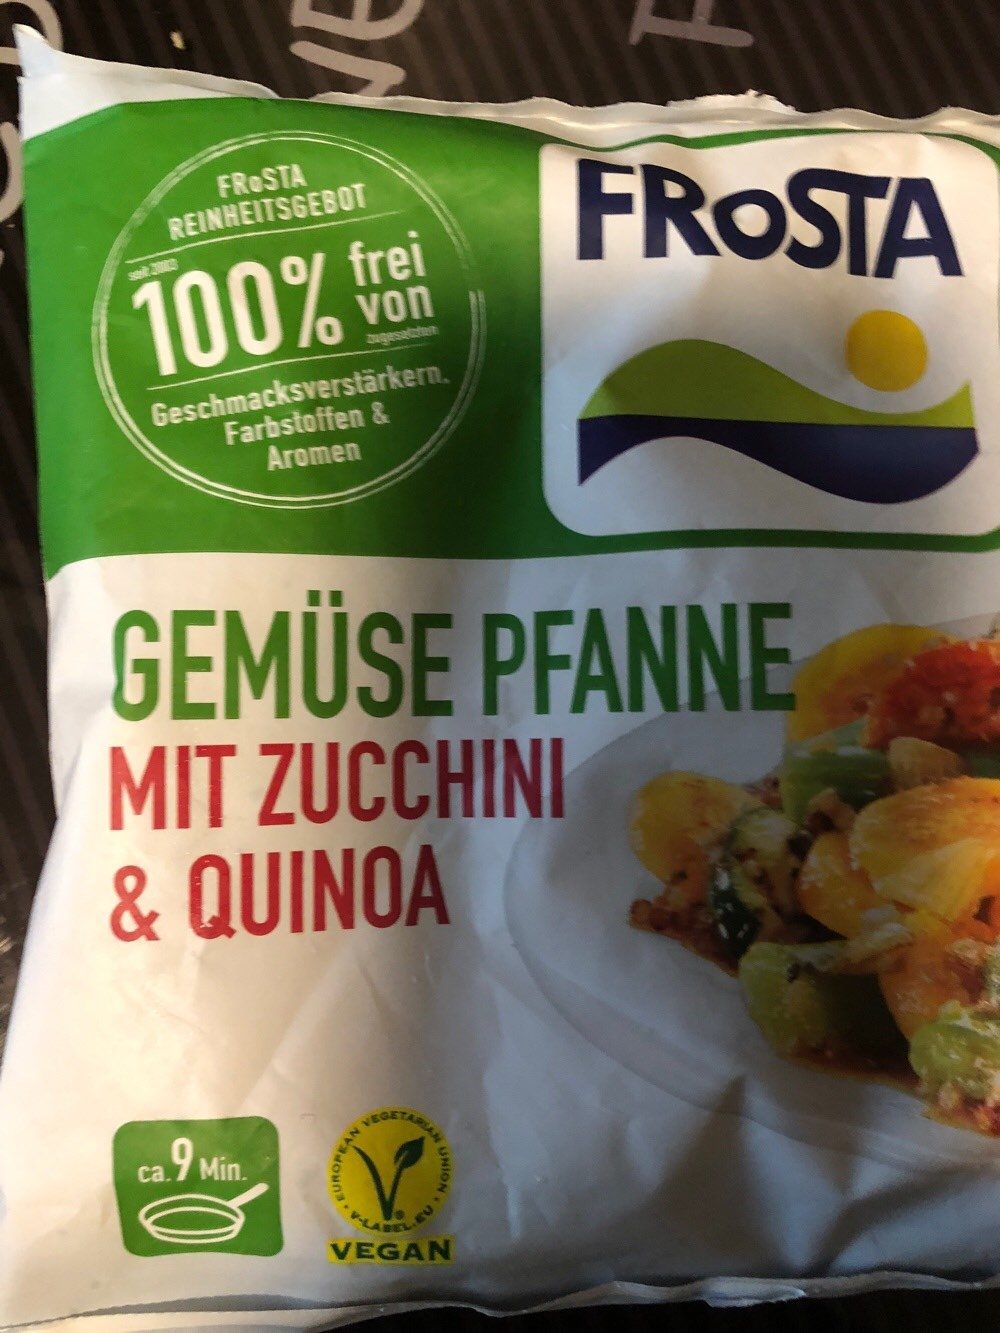 Gemüse Pfanne mit Zucchini und Quinoa - Produkt